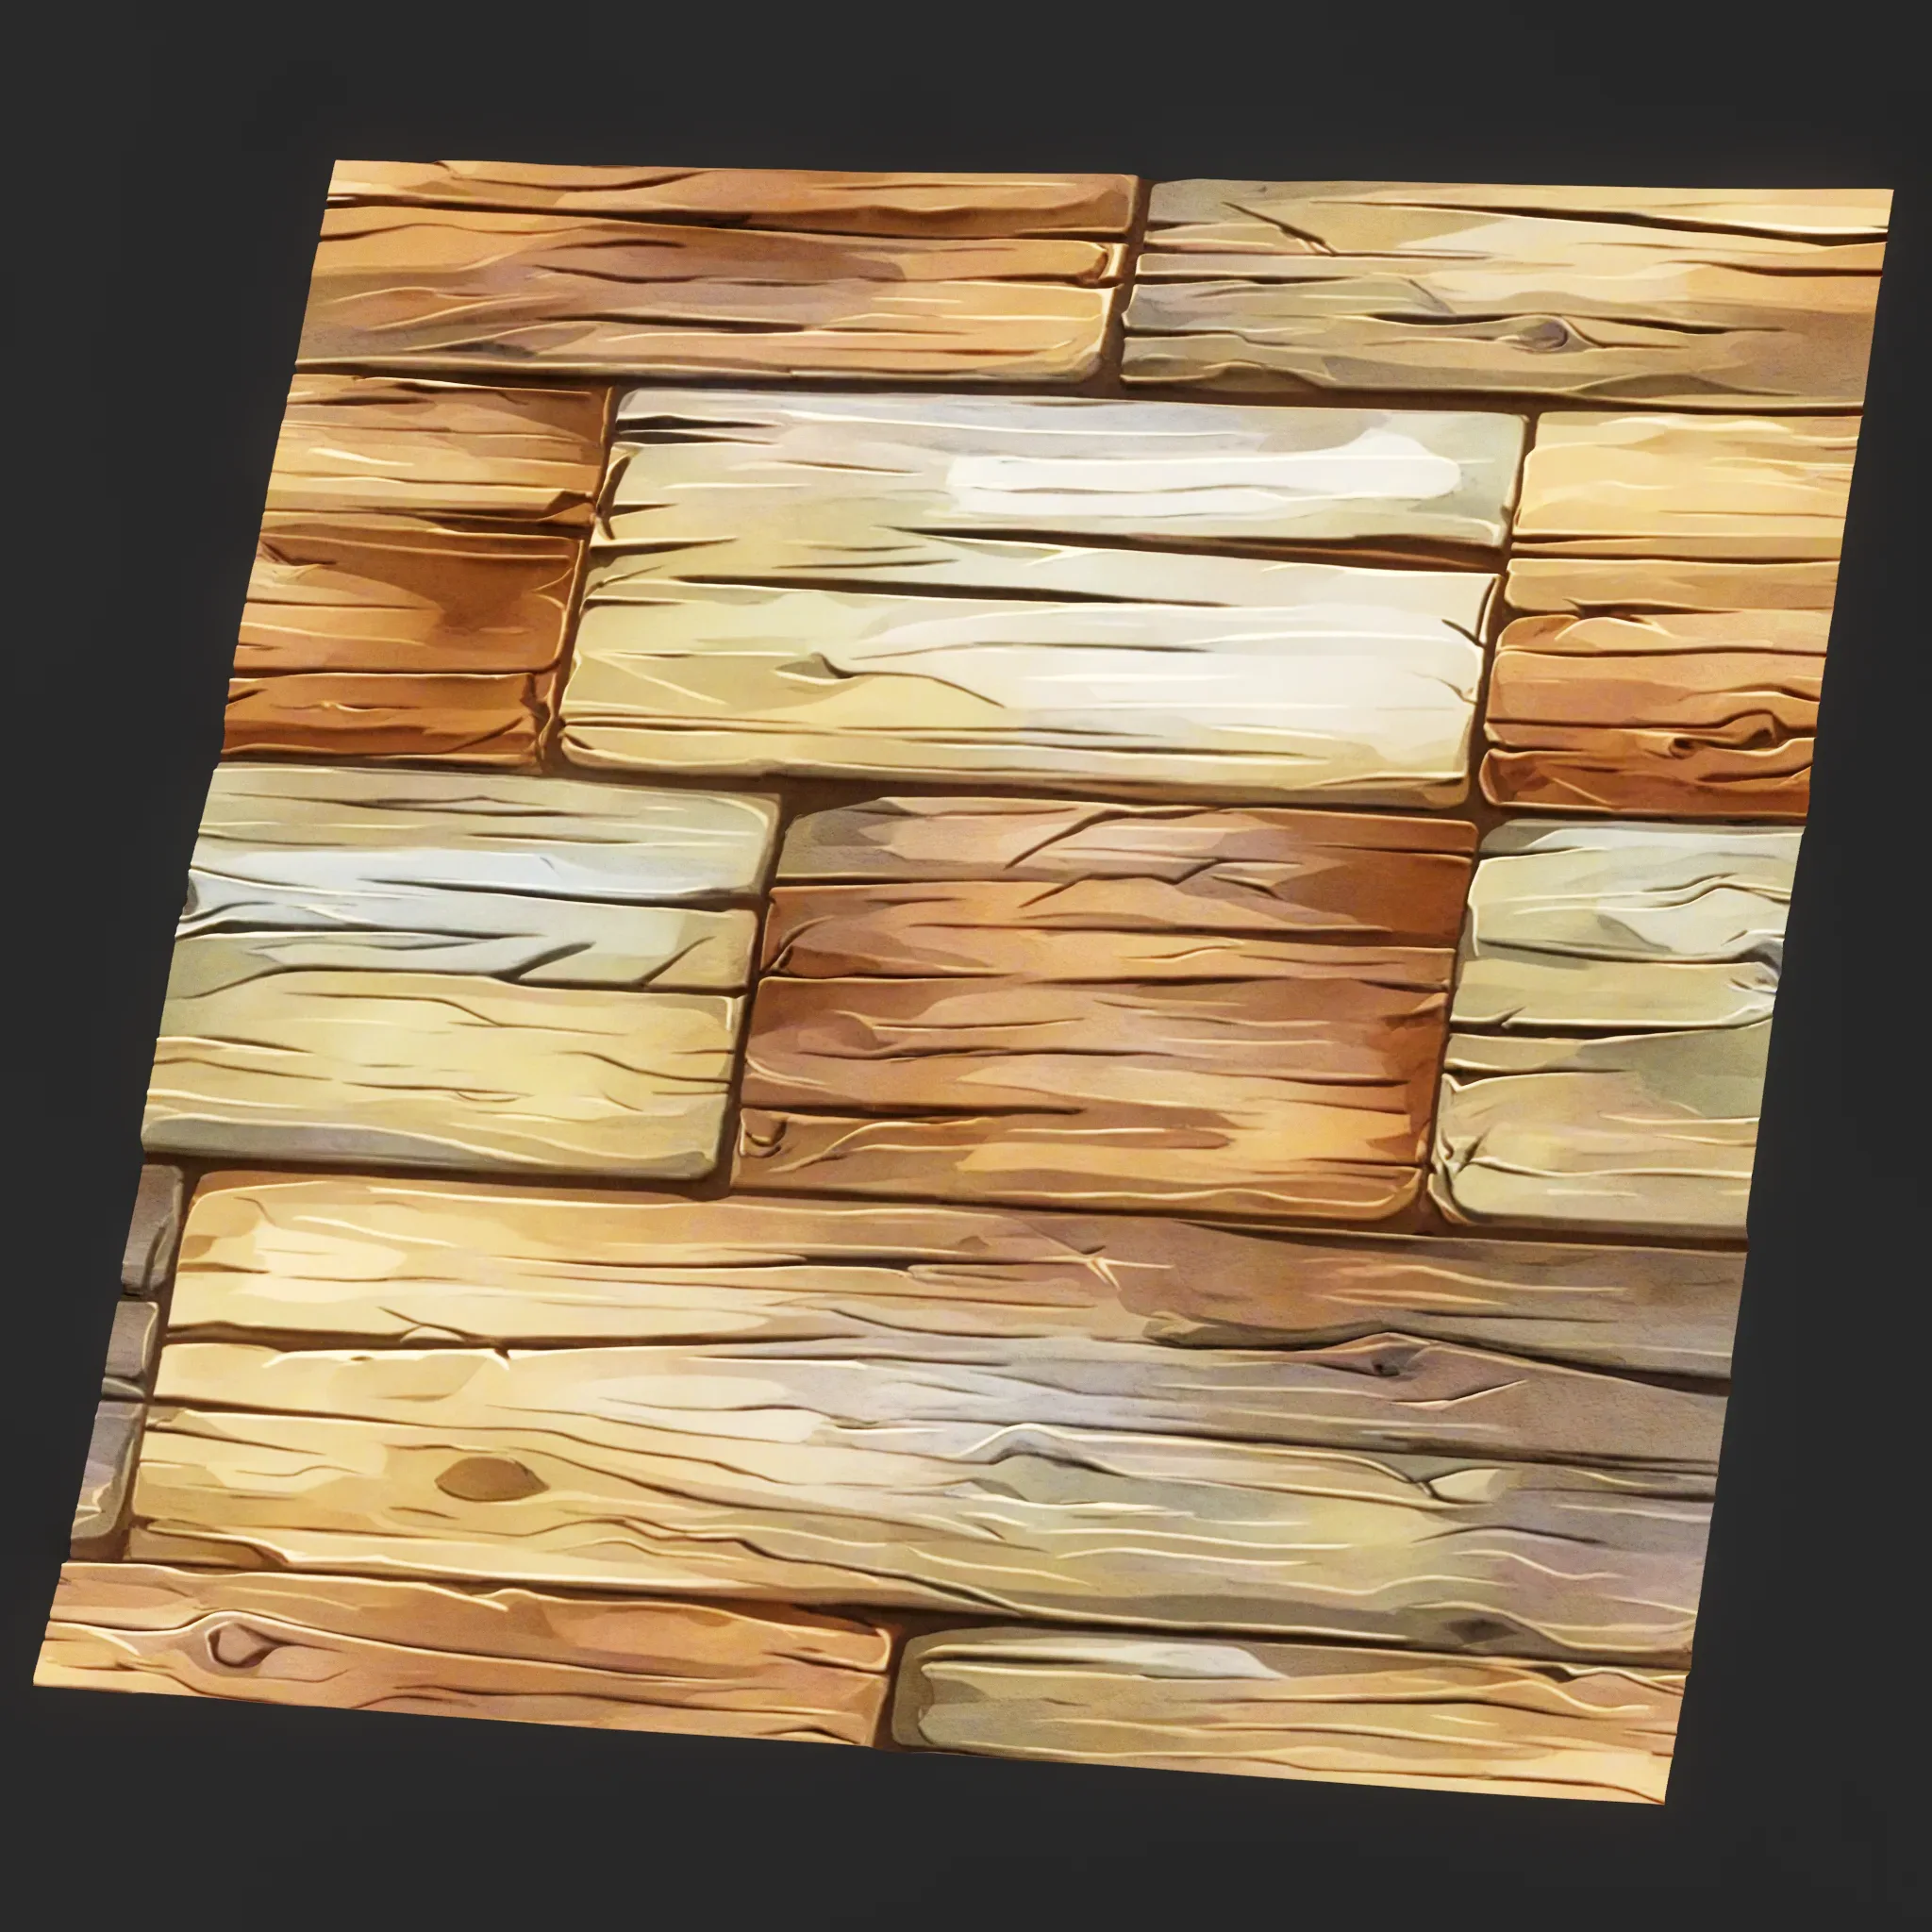 Stylized Wood Seamless Texture